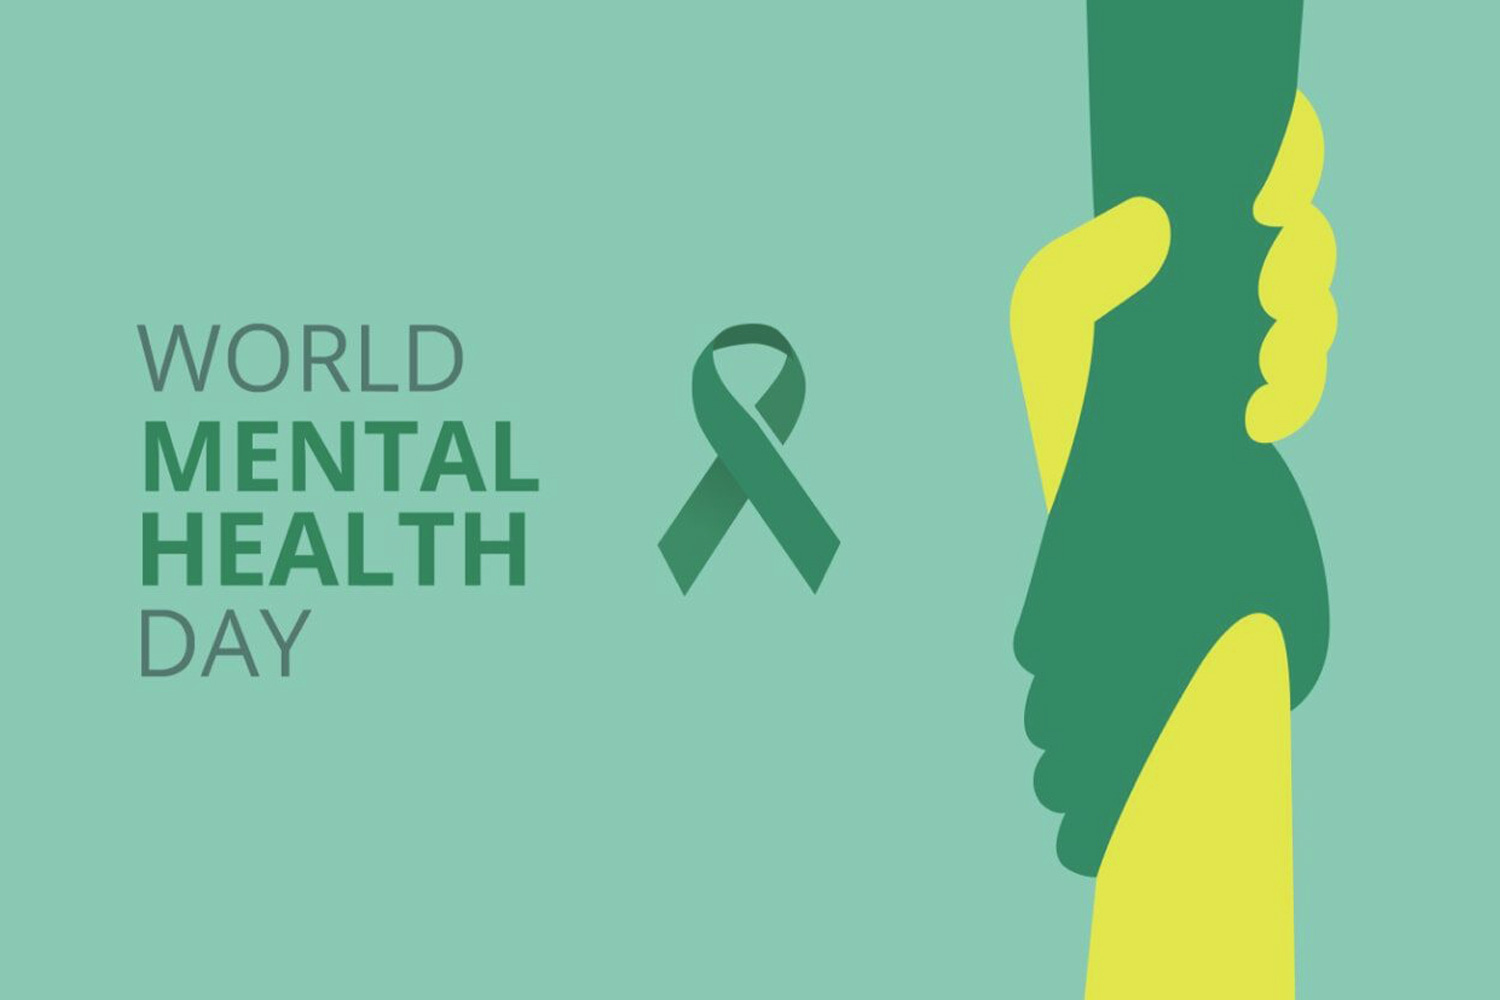 World Mental Health Day: "Ngày Sức khoẻ tâm thần" 2021 trong một thế giới "không bình đẳng"